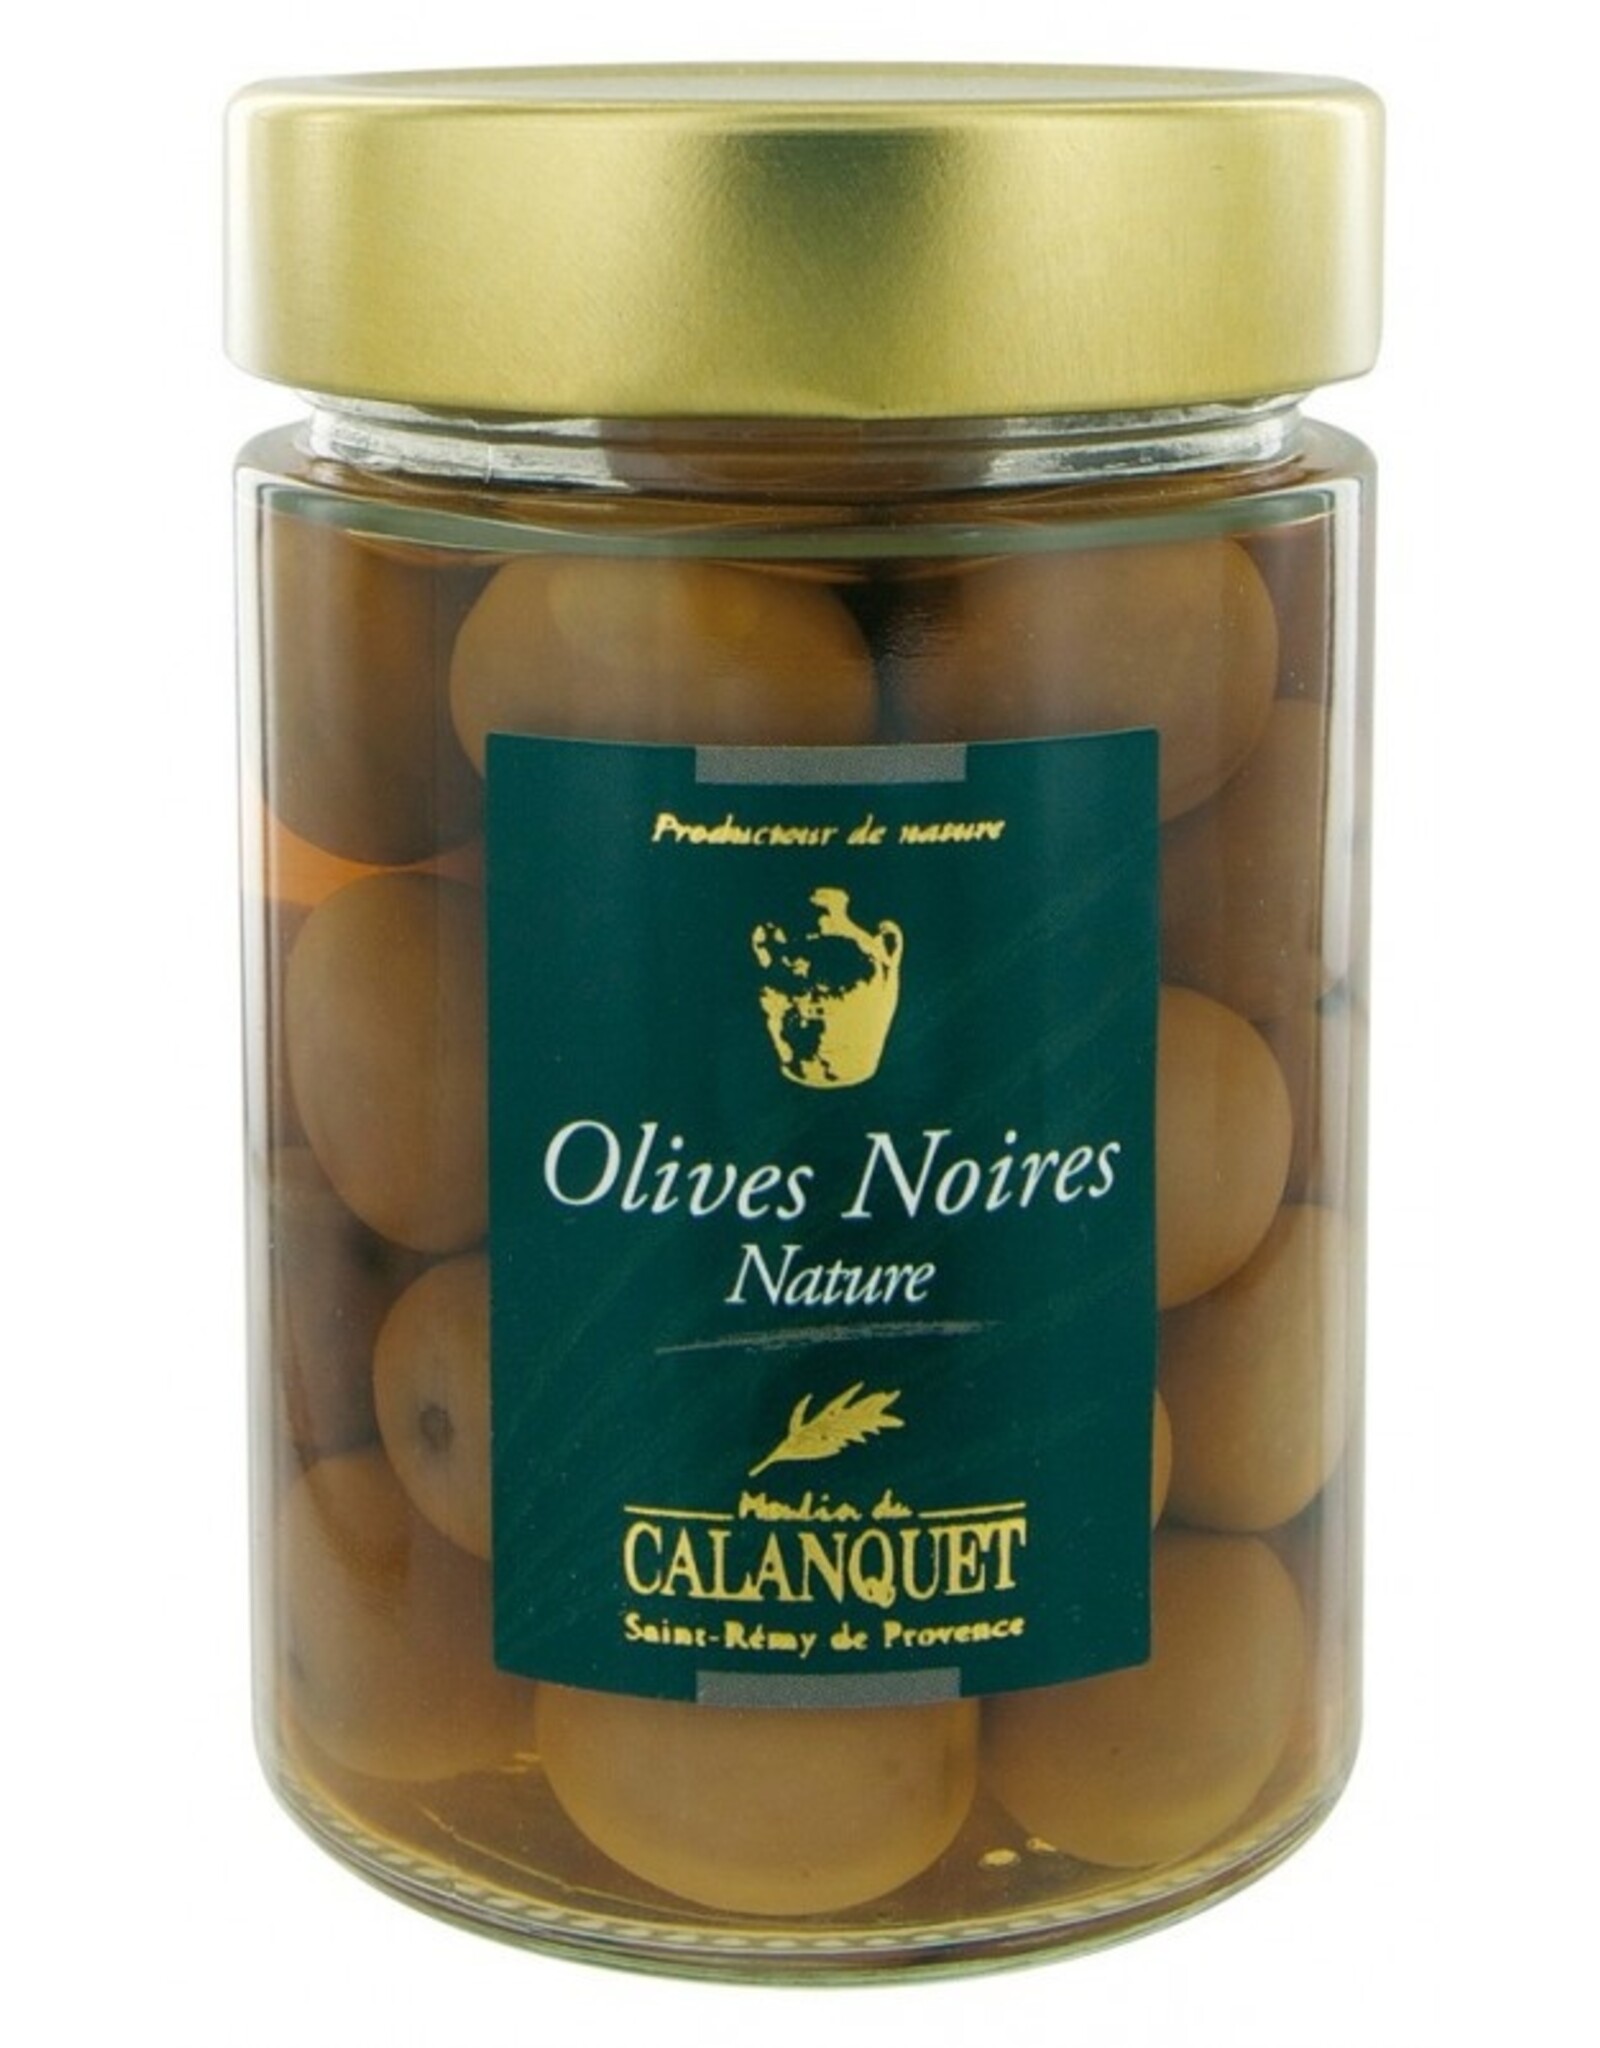 Moulin du Calanquet Olives Noires Nature  / Black Olives 175 g